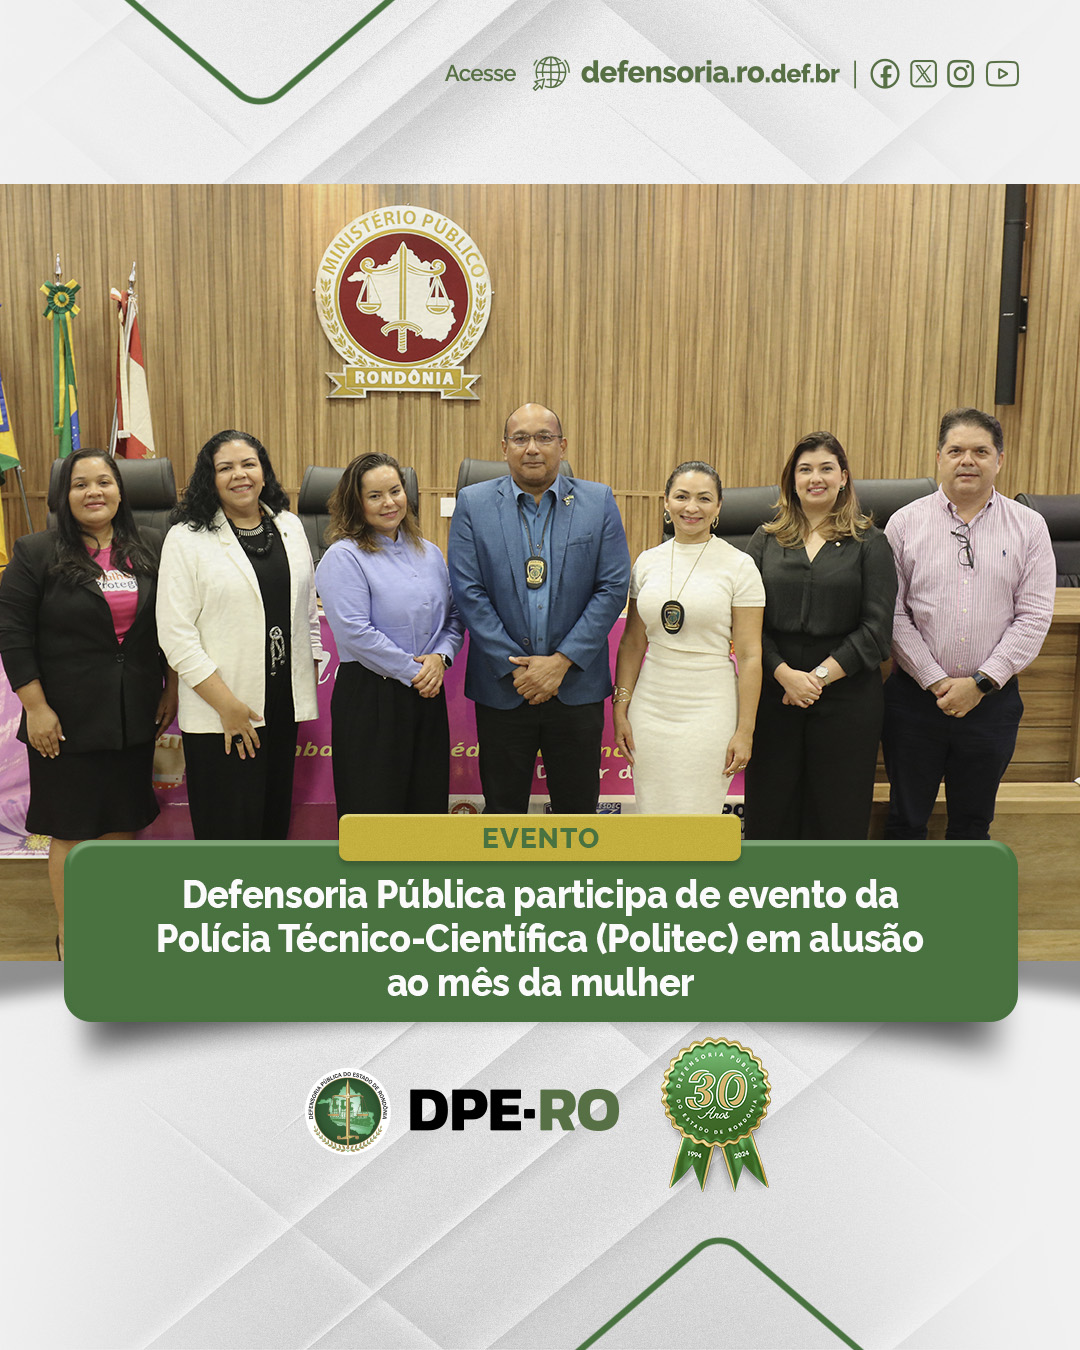 Defensoria Pública participa de evento da Polícia Técnico-Científica (Politec) em alusão ao mês da mulher